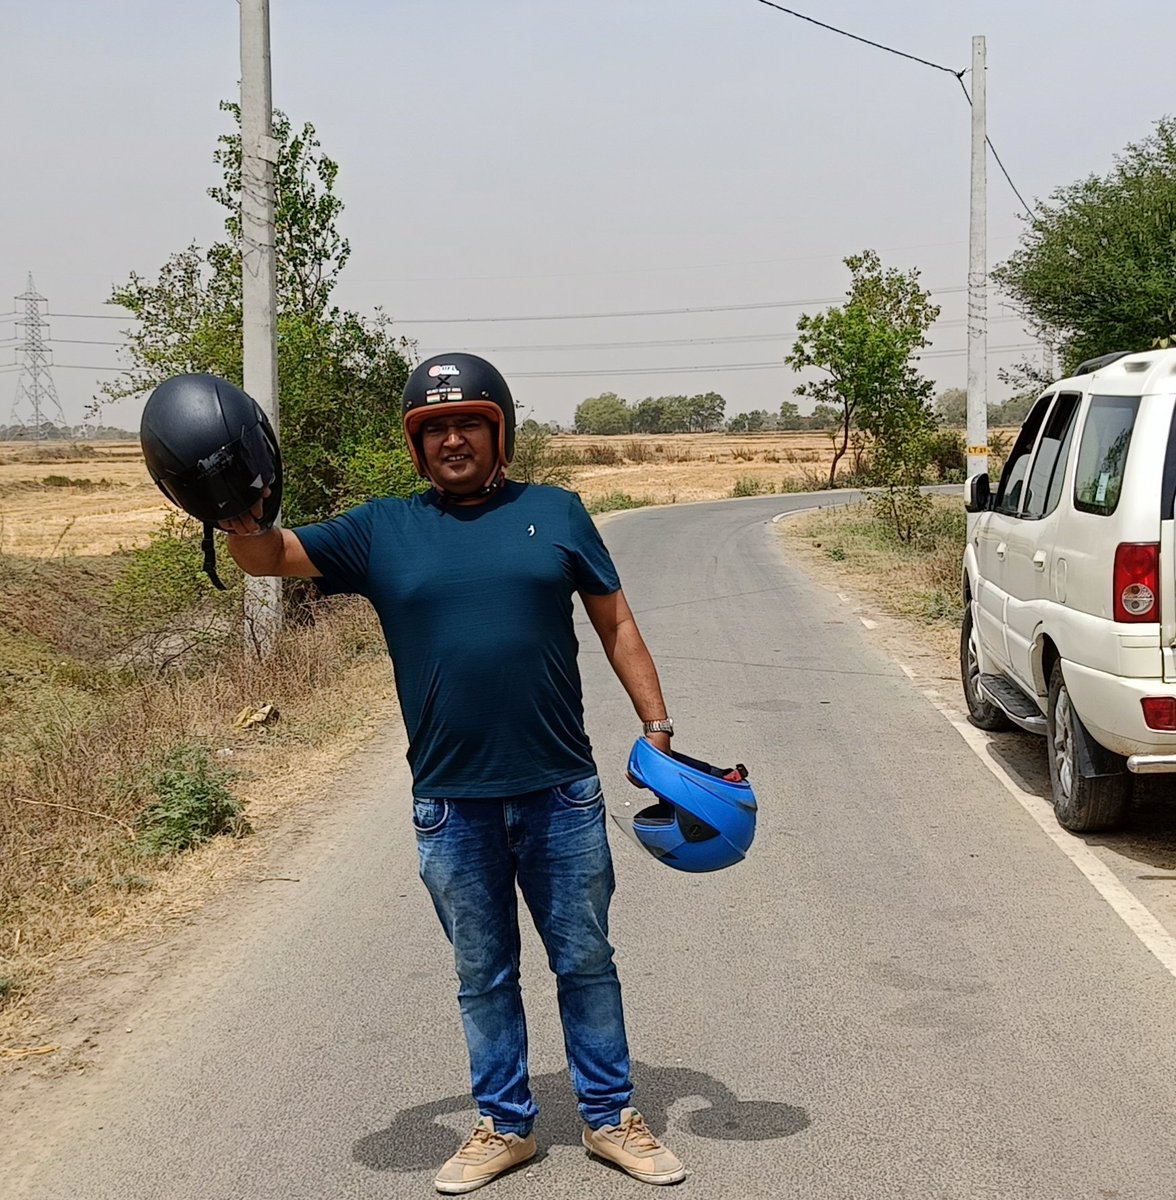 कल से भोपाल की सड़कों पर मिलूंगा 🙏🇮🇳
सड़क दुर्घटना मुक्त भारत हेलमेट मैन.
#roadsafety #savelive #helmetmanofindia #HelmetBank #india #helmetman #savelives